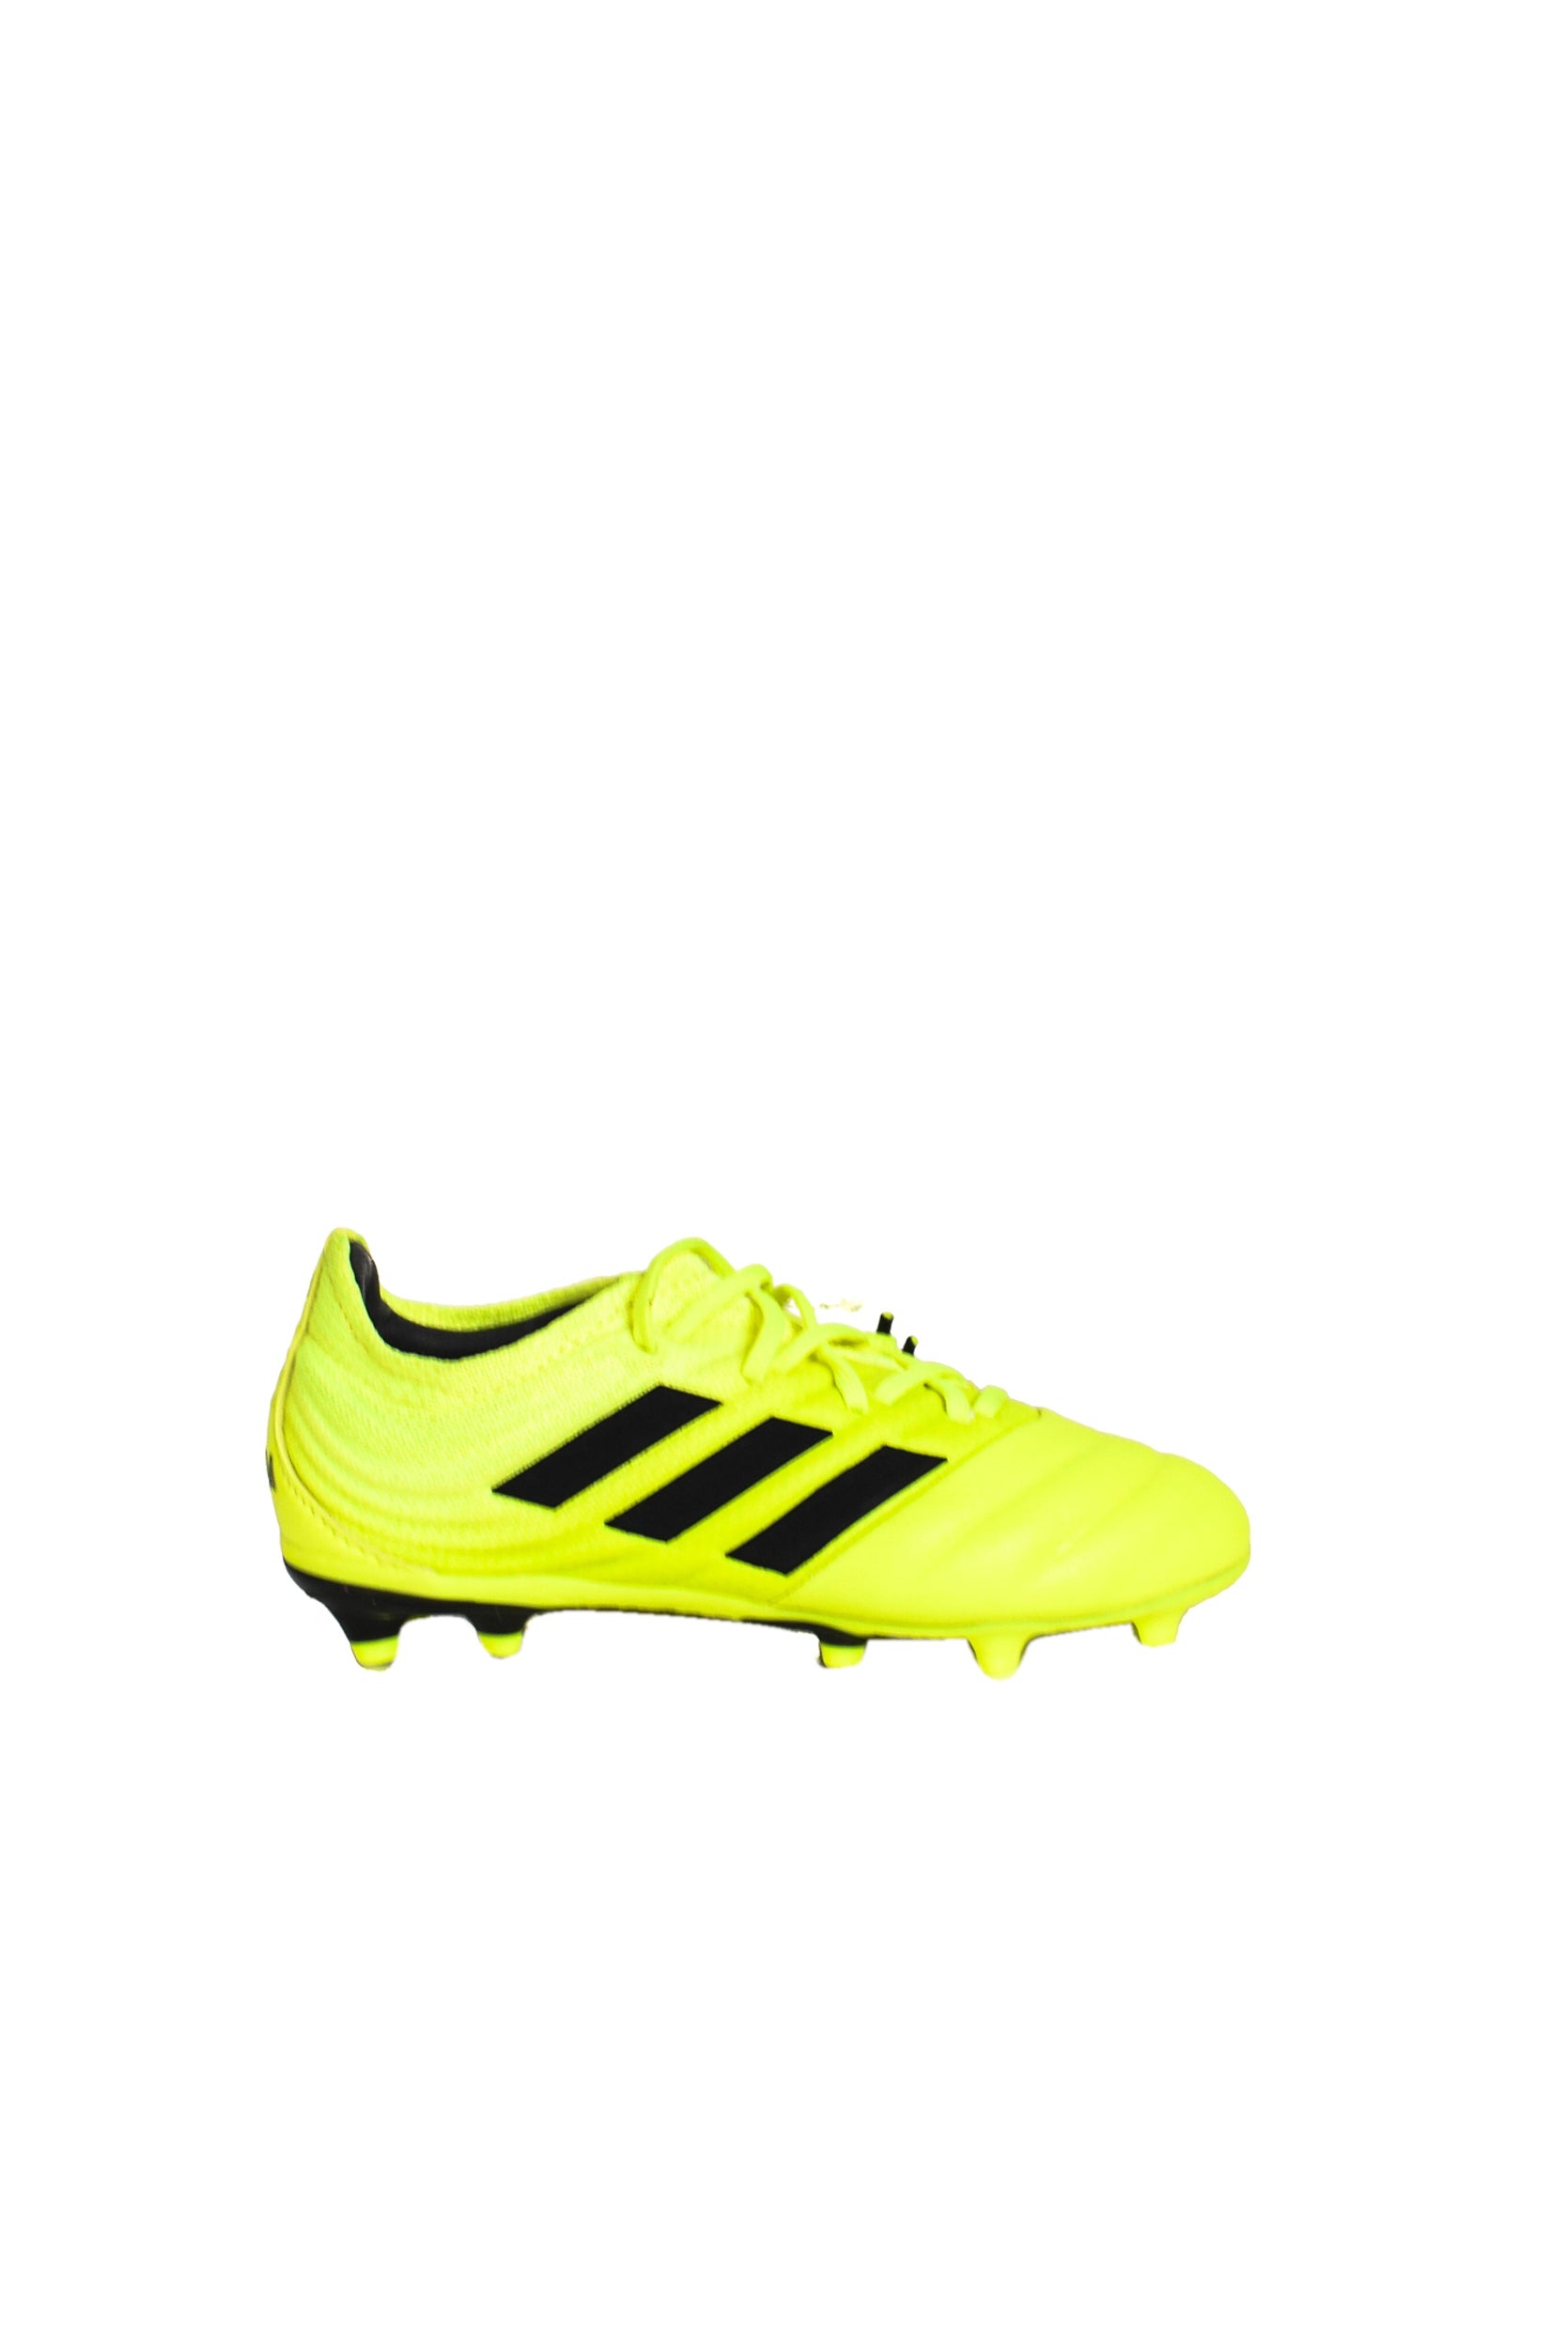 Adidas Football Cleats 6T (EU30) – Retykle